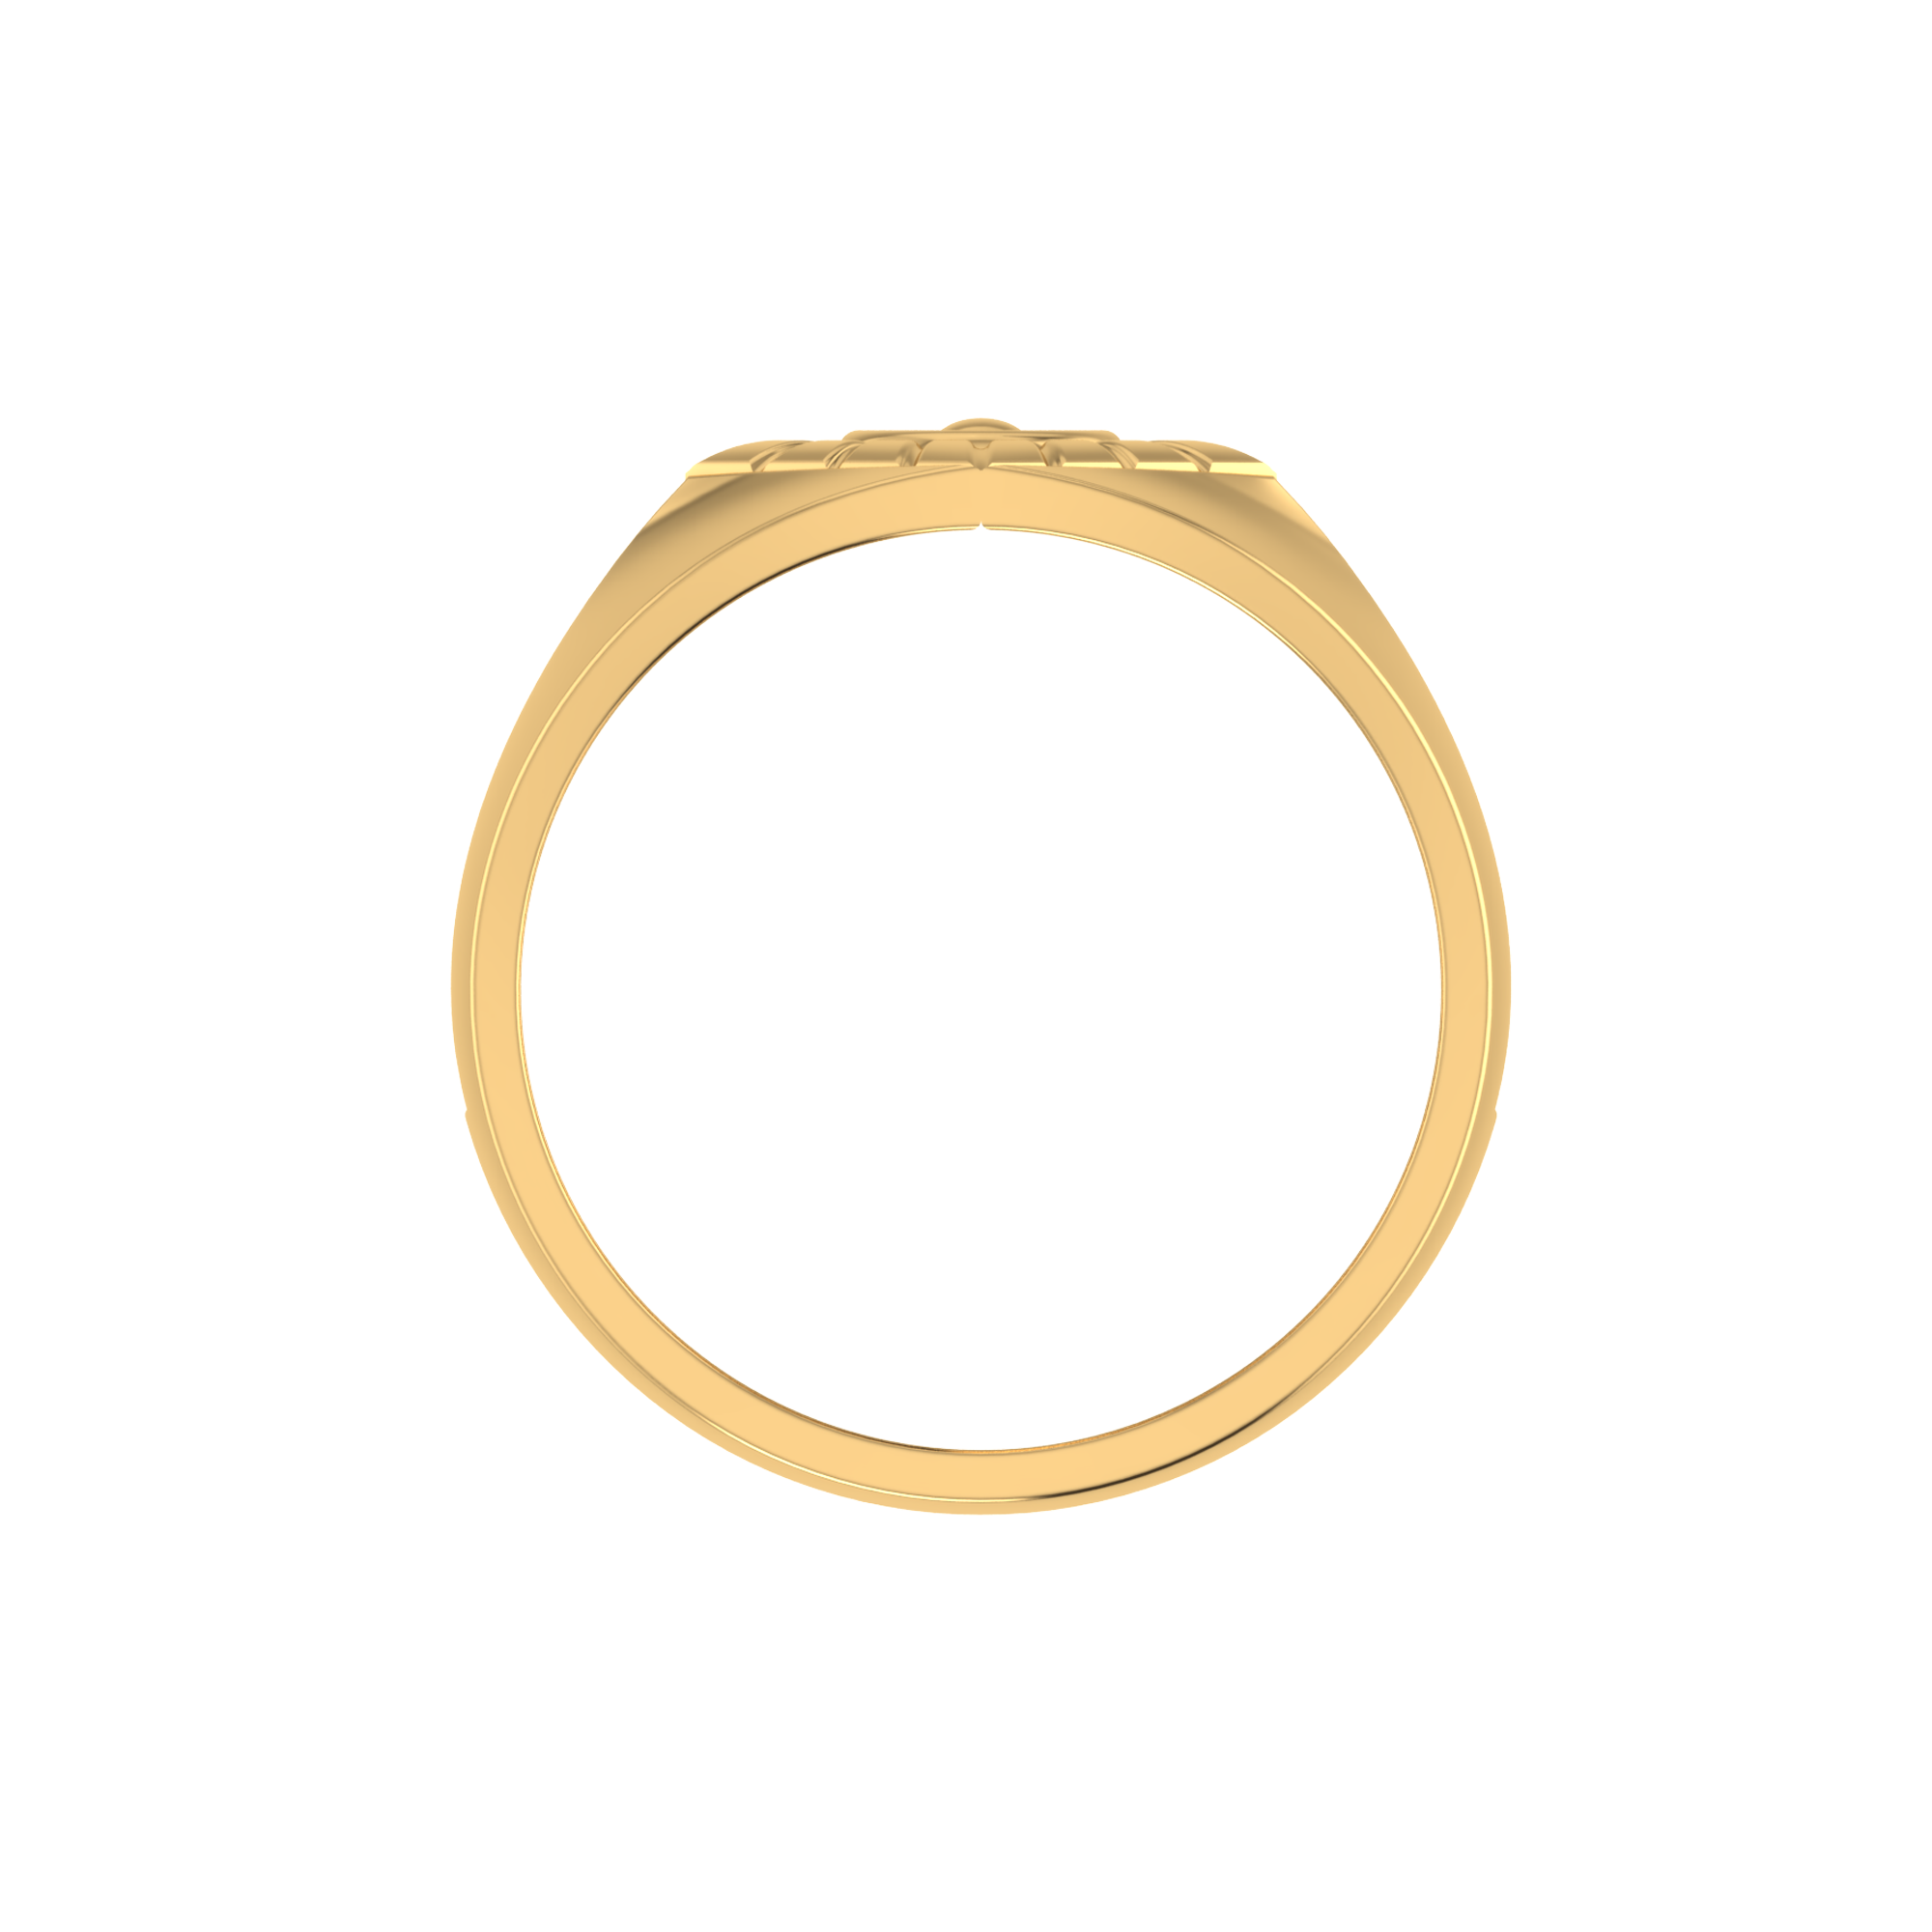 14K Gold Men's Ring, Gold Ring, Ribbed Ring, Man Ring Gold, Men's Gold Ring,  Handmade Ring, Rings for Men, Men's Wedding Ring - Etsy